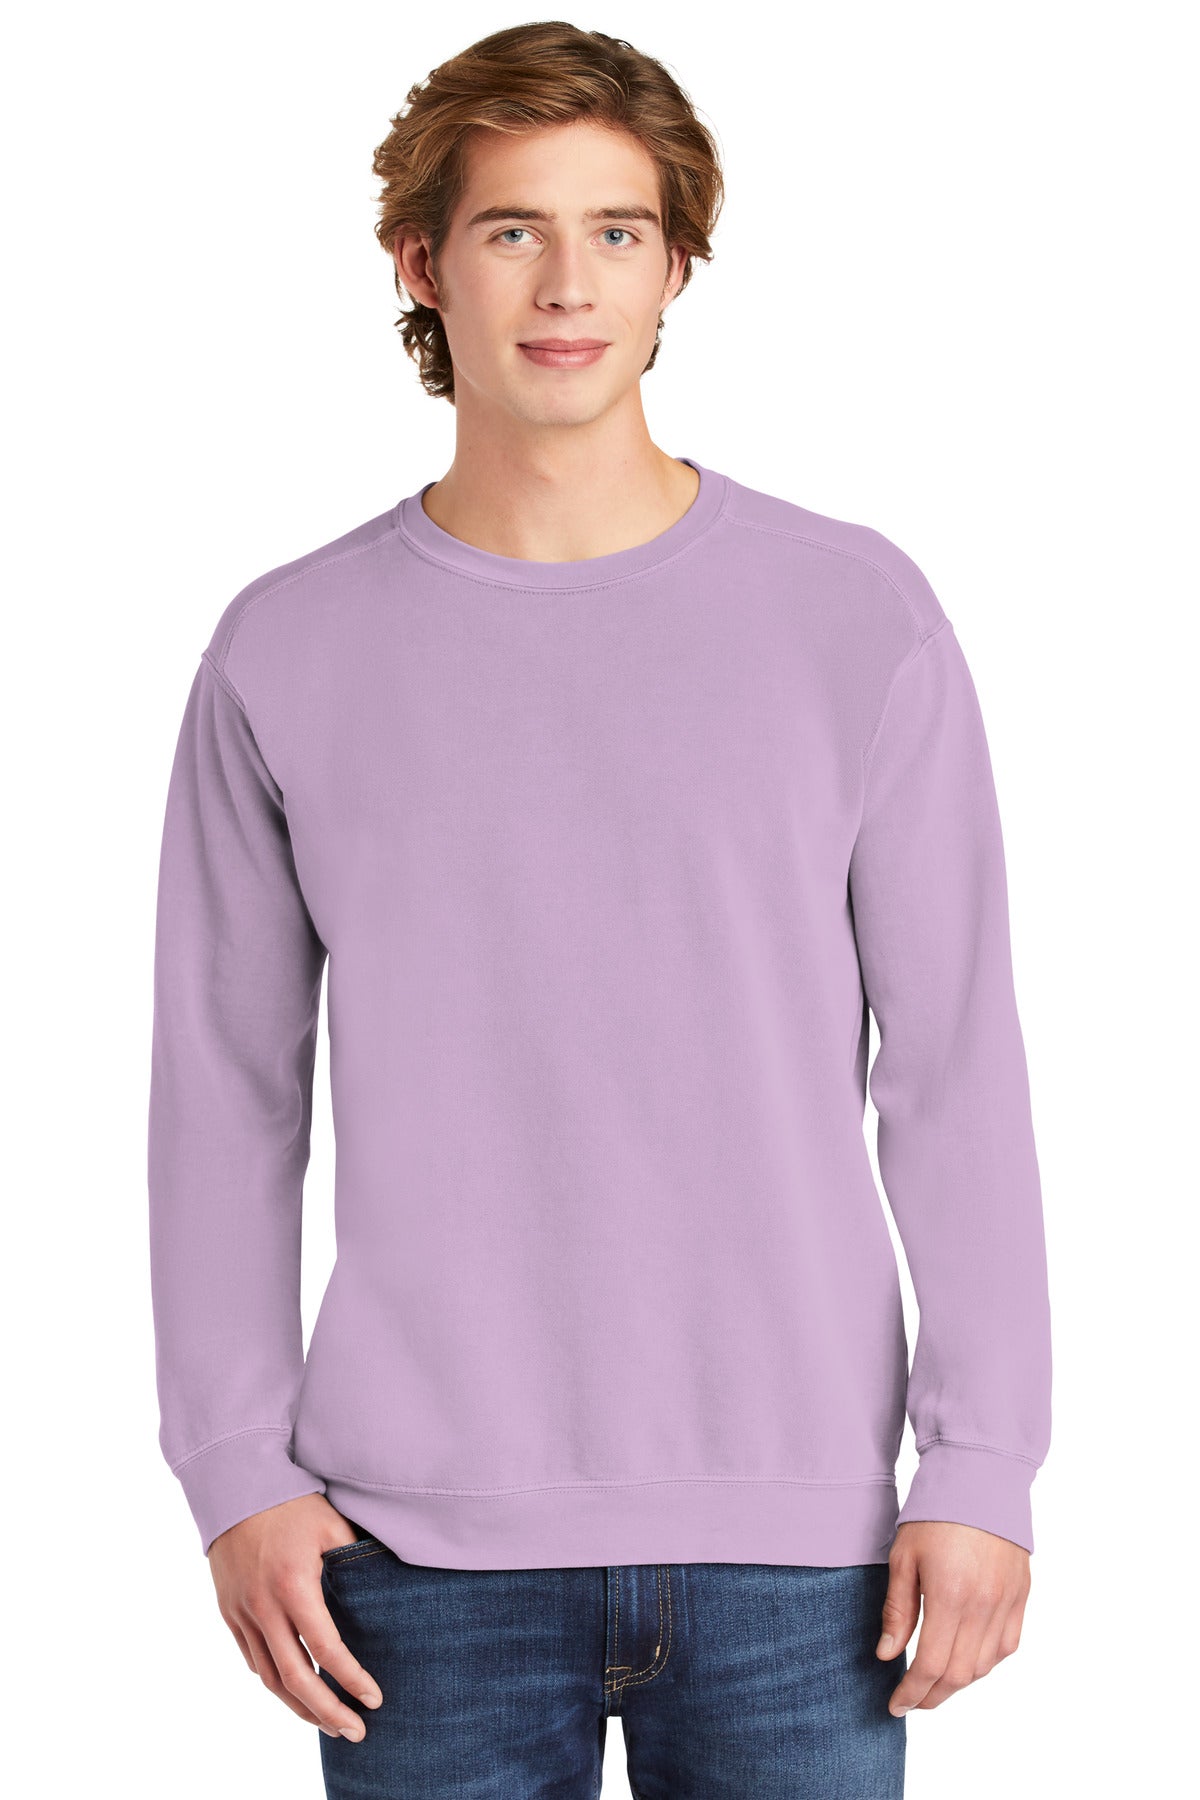 Sweatshirts/Fleece Orchid Comfort Colors